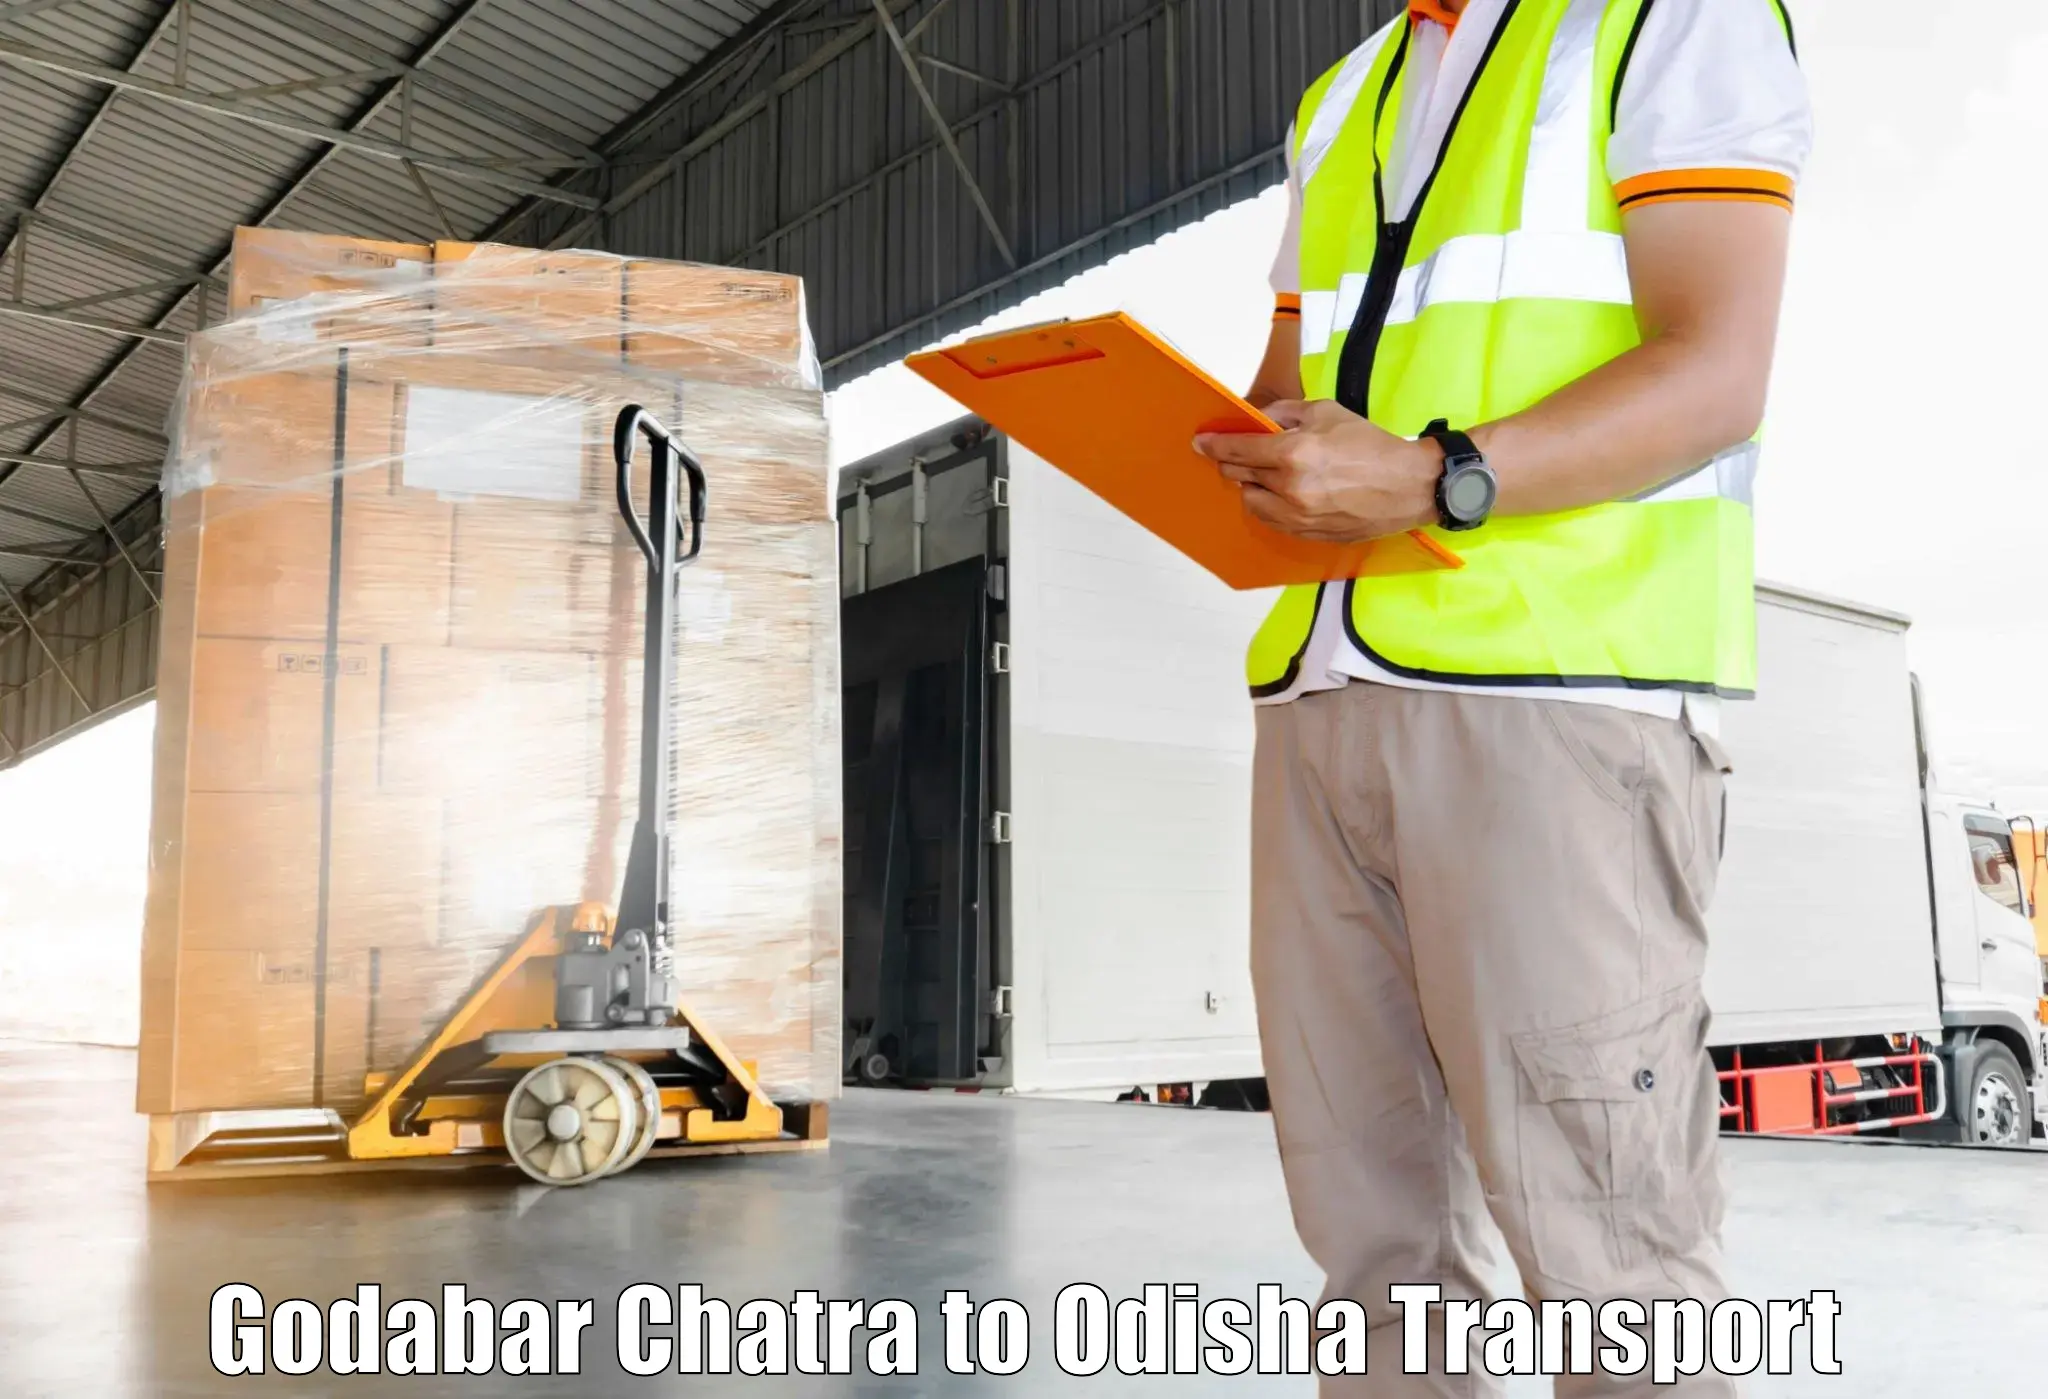 Interstate goods transport in Godabar Chatra to Melchhamunda